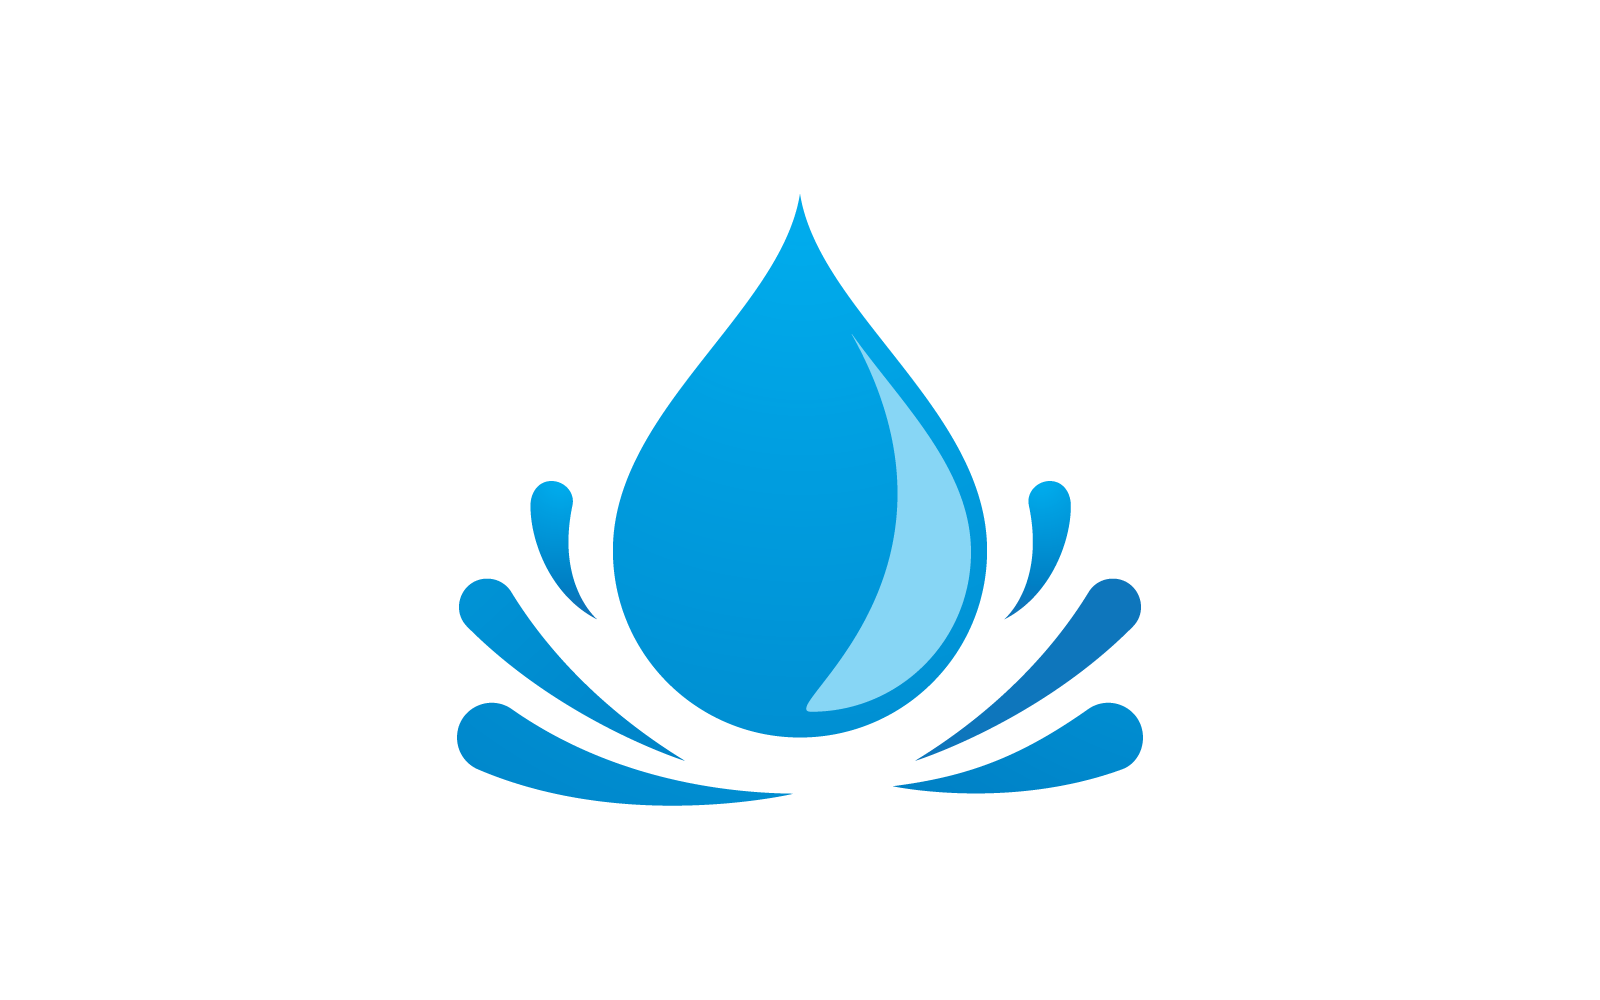 Ilustracja wektorowa logo kropli wody